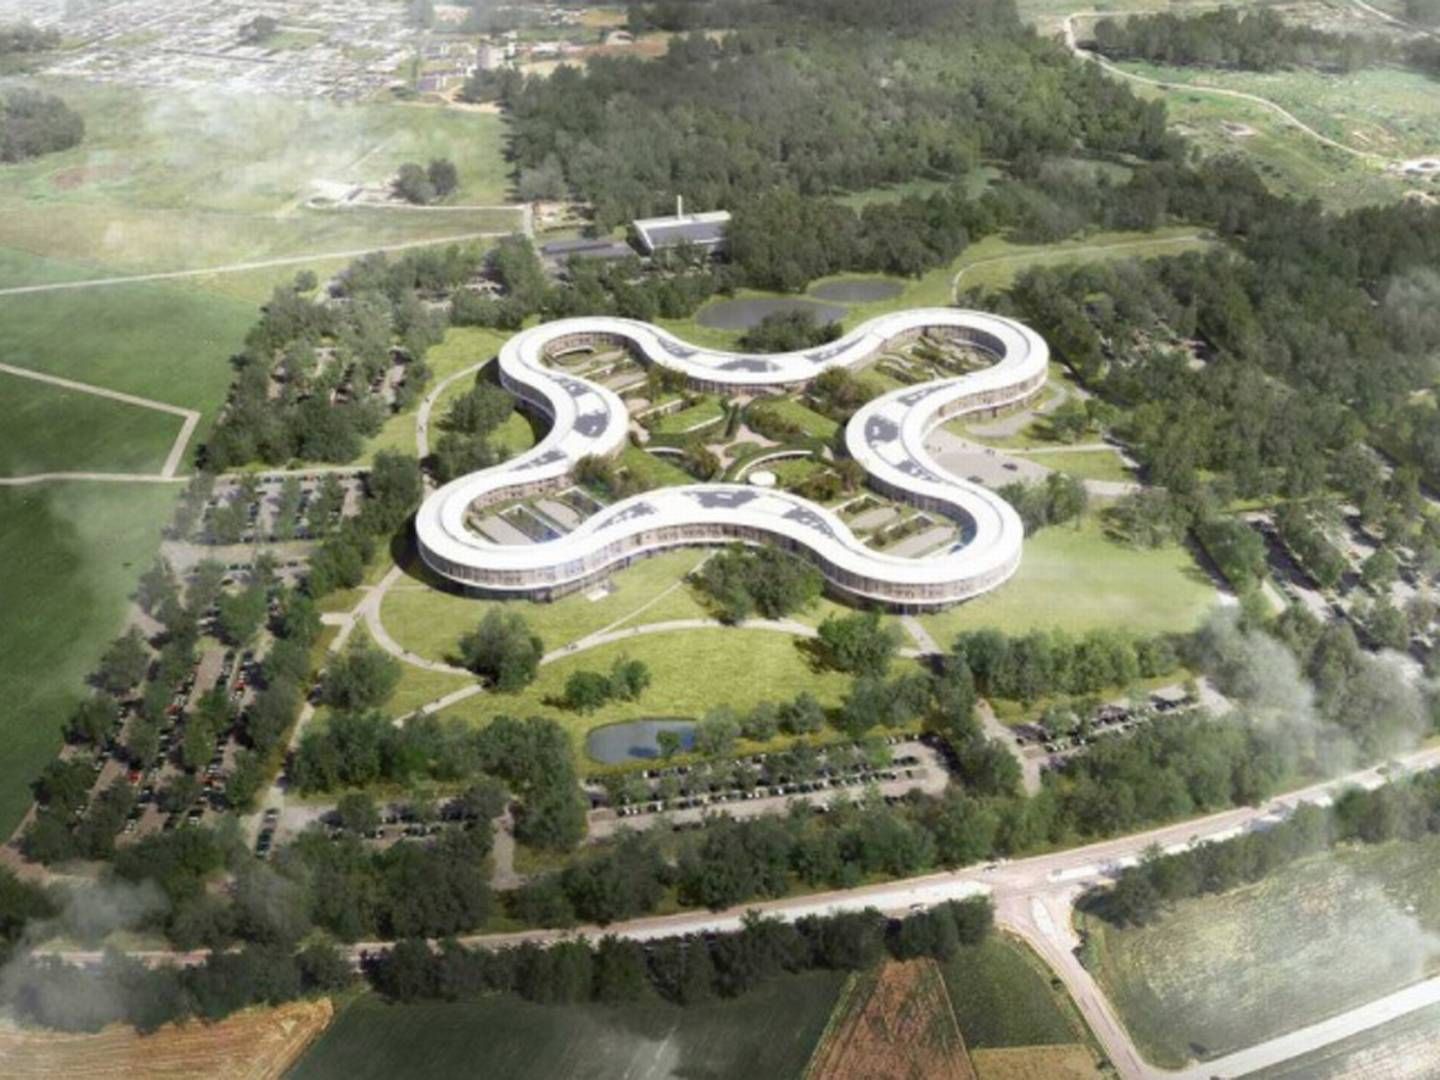 Det er i området omkring det kommende supersygehus i Hillerød, at Stensdal Group vil opføre tårnbyggeri. | Foto: PR-visualisering